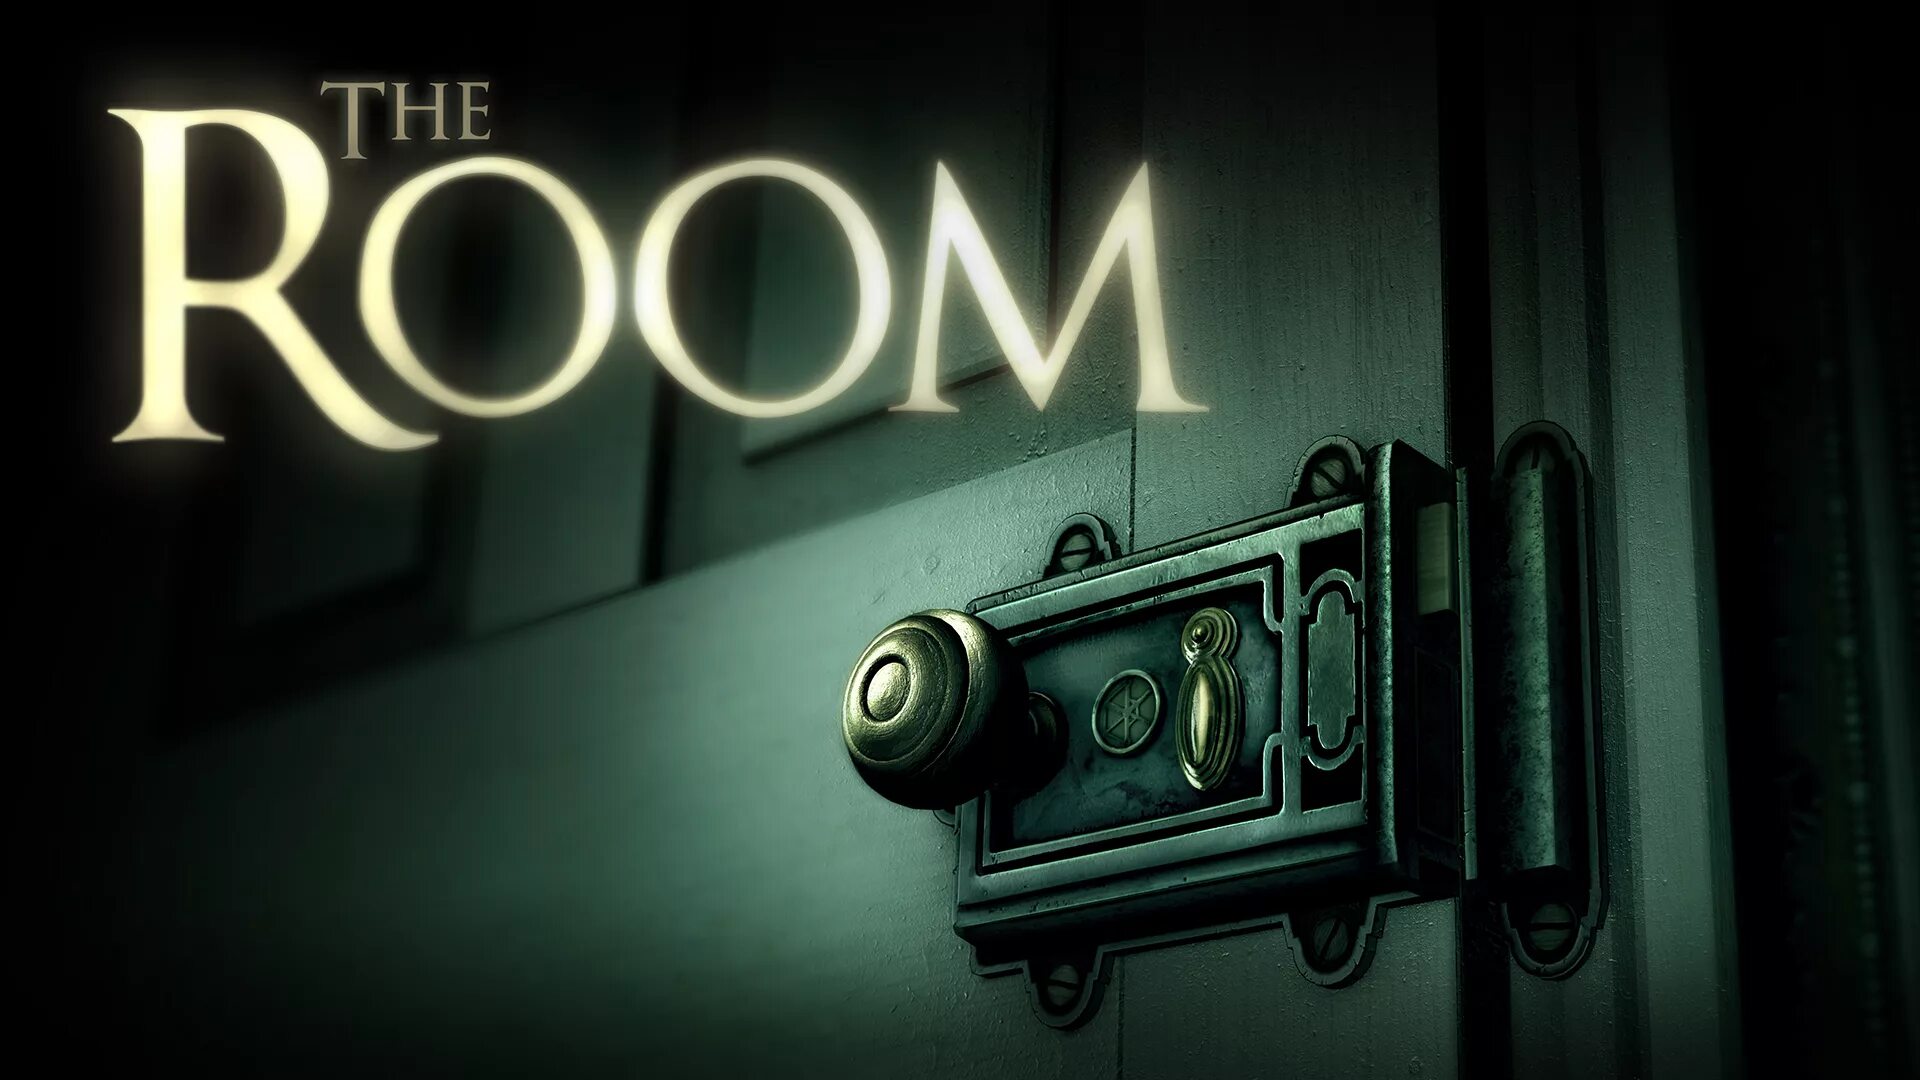 The room poster. The Room (игра). Игра головоломка the Room. The Room игра логотип. Room игра на андроид.